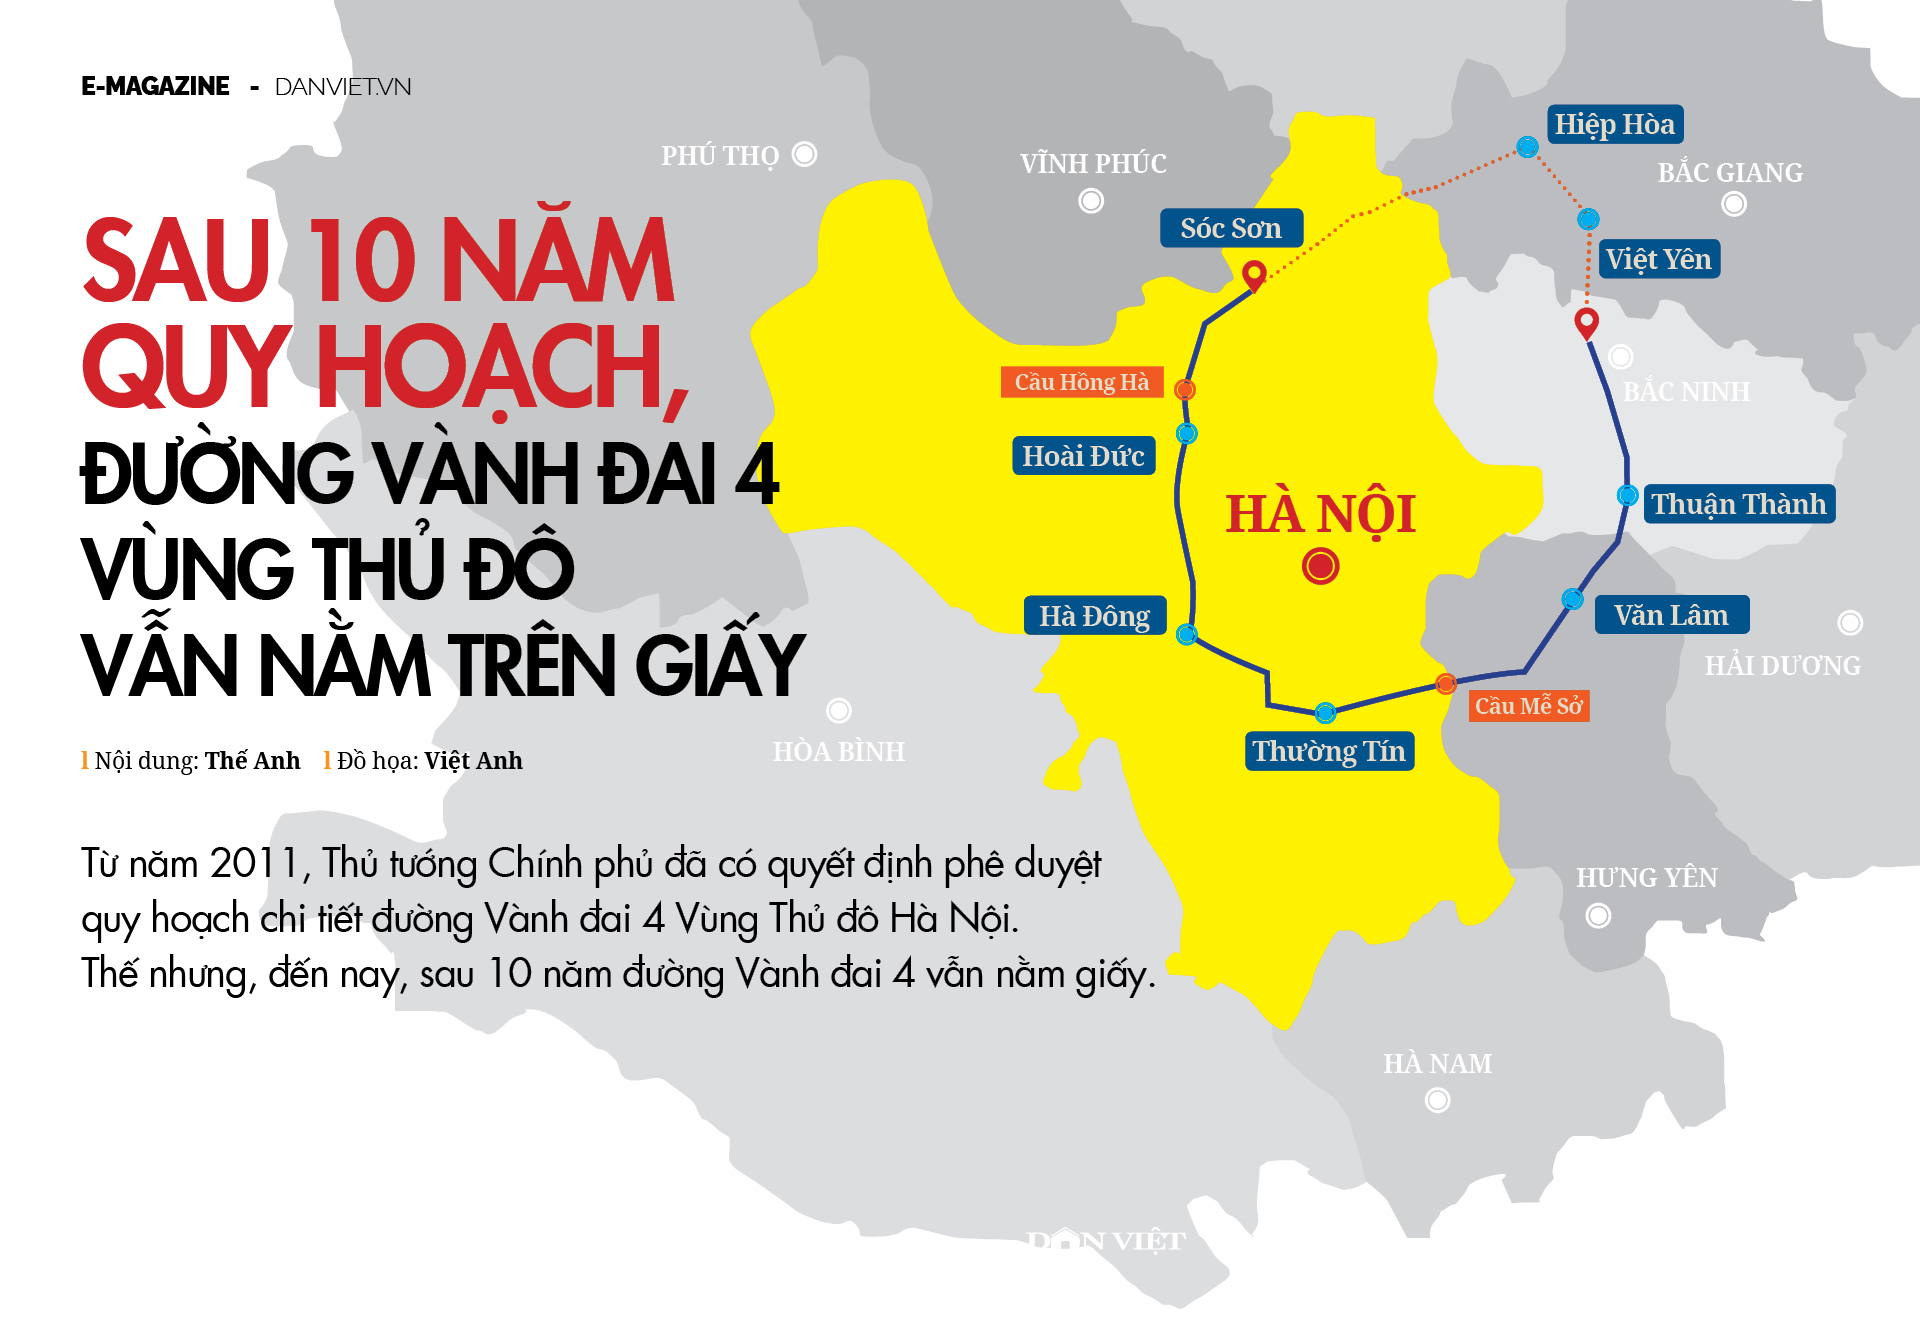 Đầu tư đường Vành đai 4 Hà Nội theo hình thức BOT sẽ làm tăng mức đầu tư 2.584 tỷ đồng - Ảnh 1.